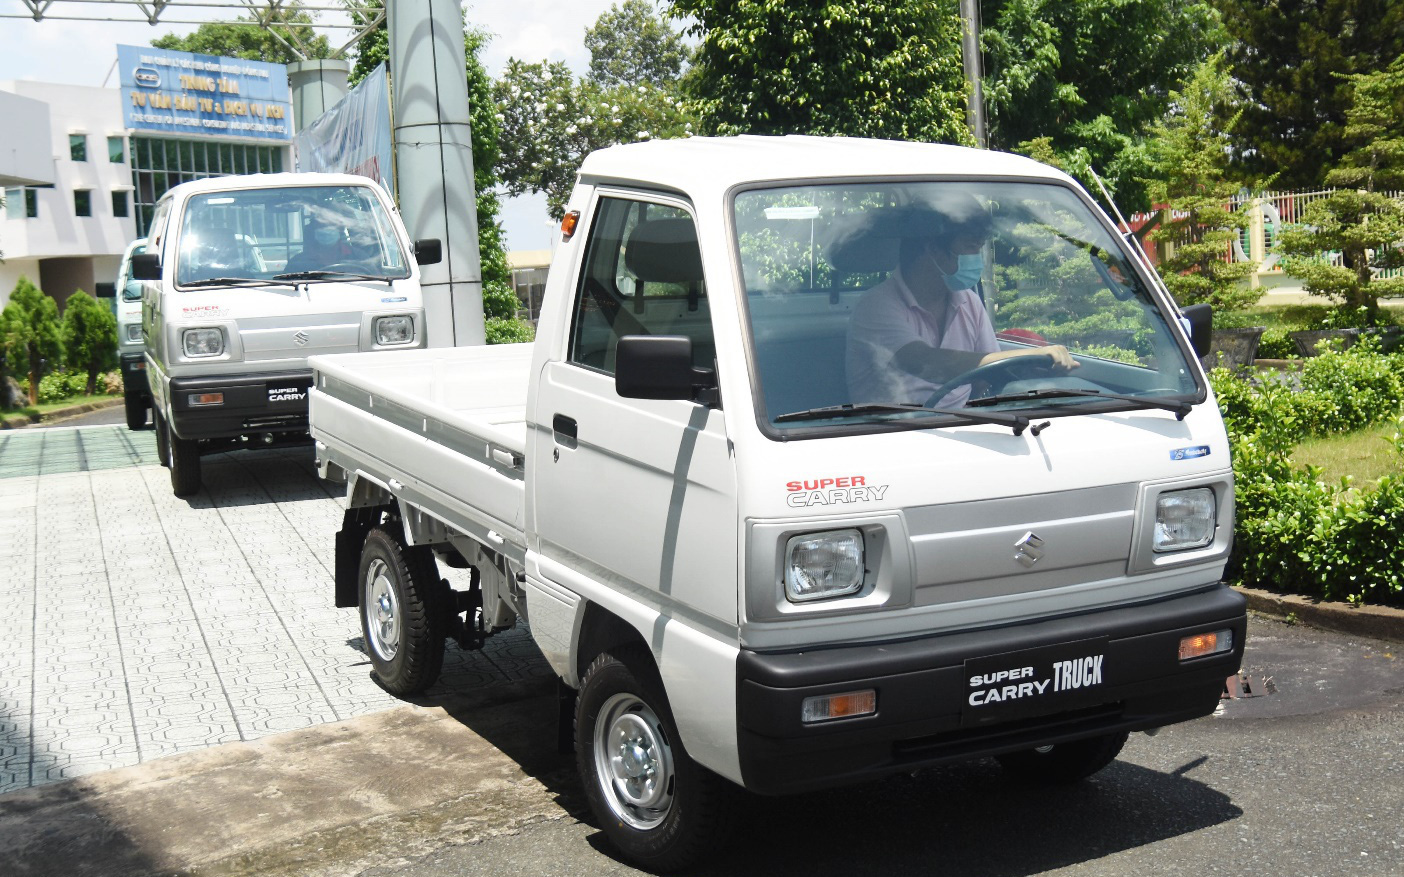 Suzuki chung tay chống dịch Covid-19 cùng cộng đồng, dành tặng Đồng Nai 4 xe thương mại tổng trị giá hơn 1 tỷ đồng